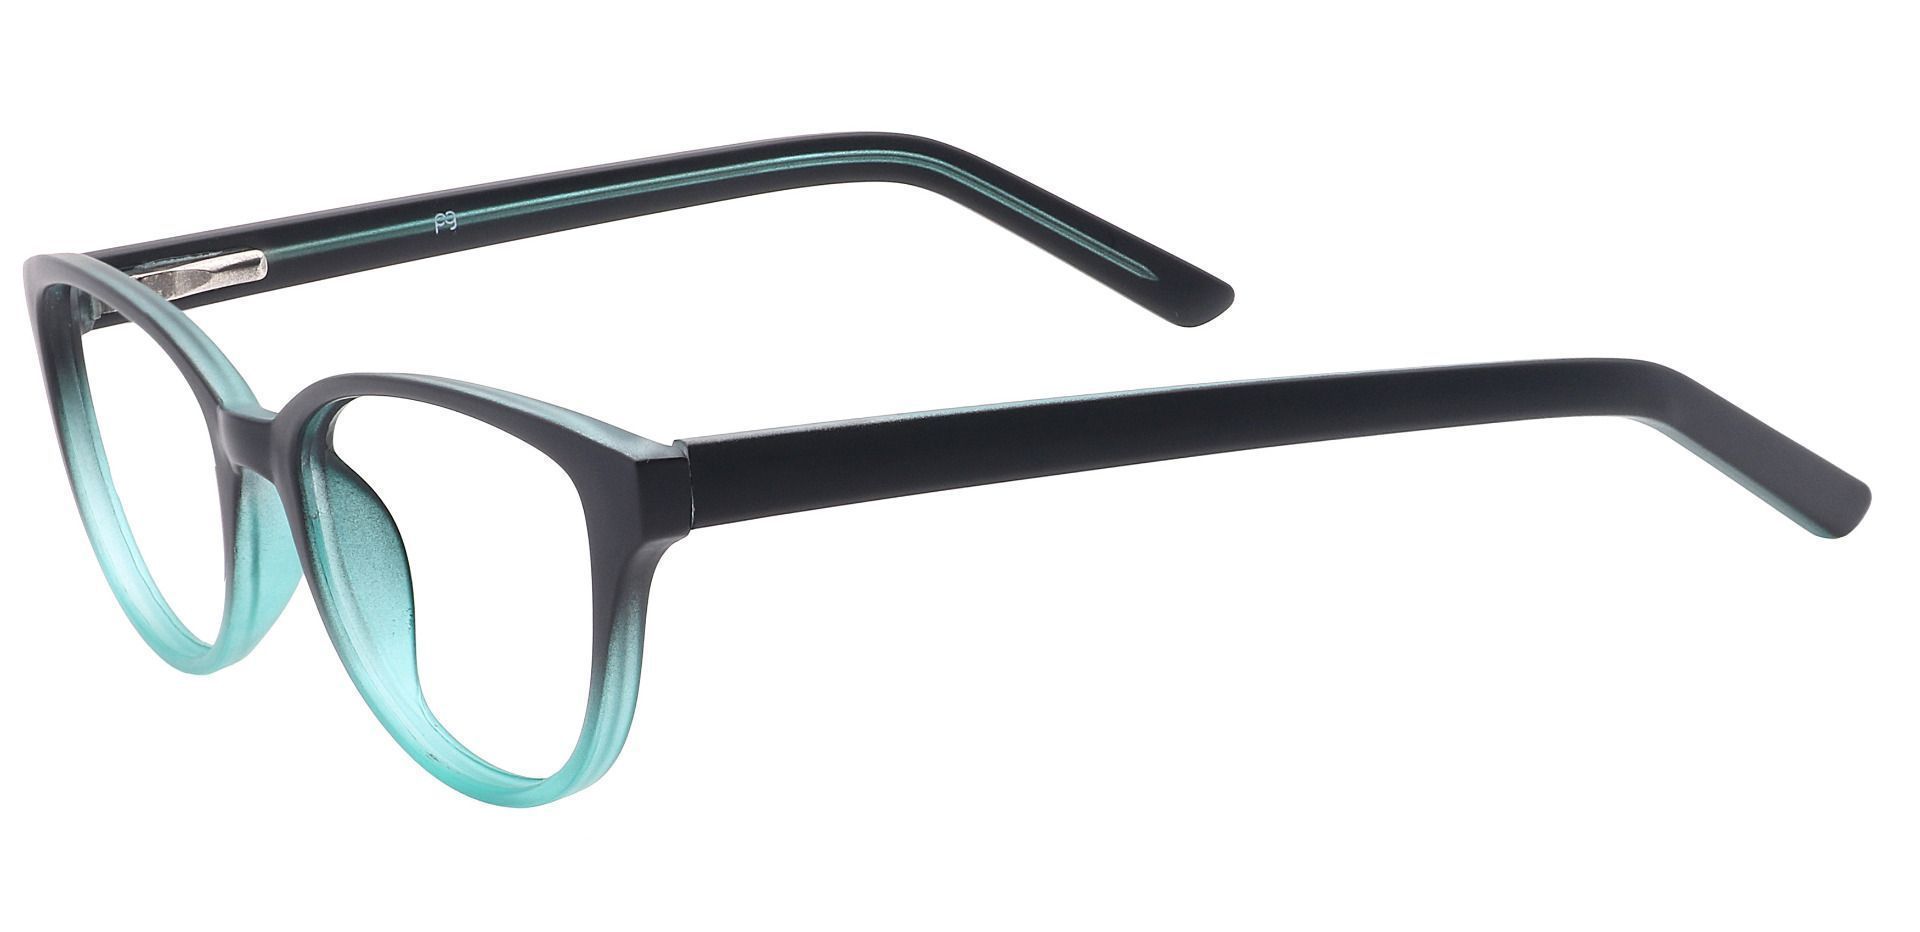 Lulu Oval Eyeglasses Frame - Black/teal Fade